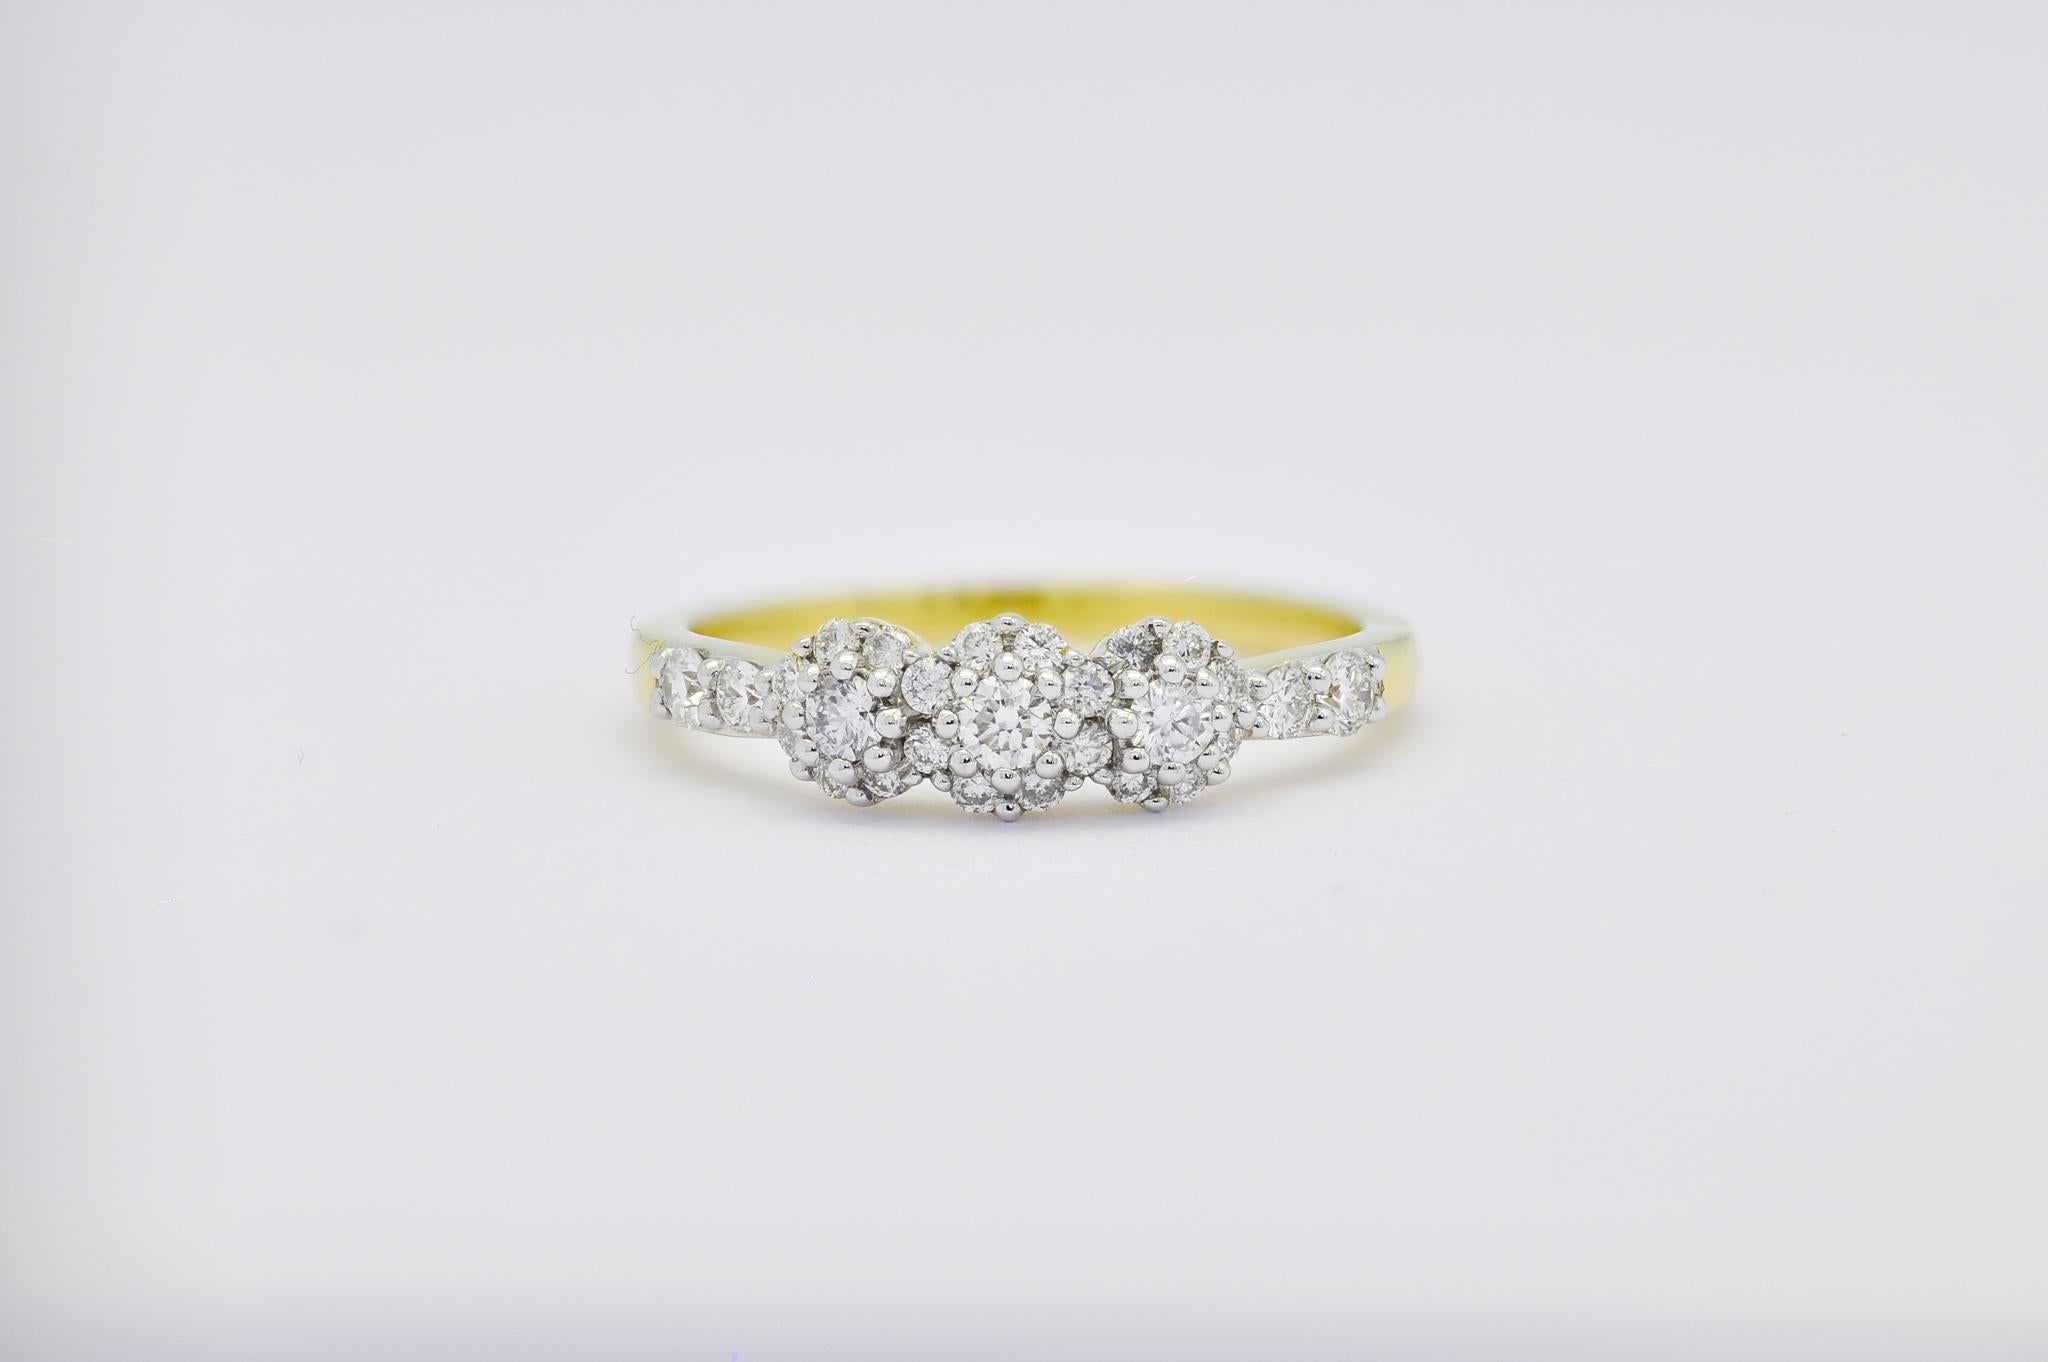 Lassen Sie sich von der himmlischen Schönheit unseres Trilogie-Cluster-Rings verzaubern, einem atemberaubenden Meisterwerk mit natürlichen Diamanten, die in feinstes 18-karätiges Gelbgold gefasst sind. Dieser bezaubernde Ring besteht aus einem Trio